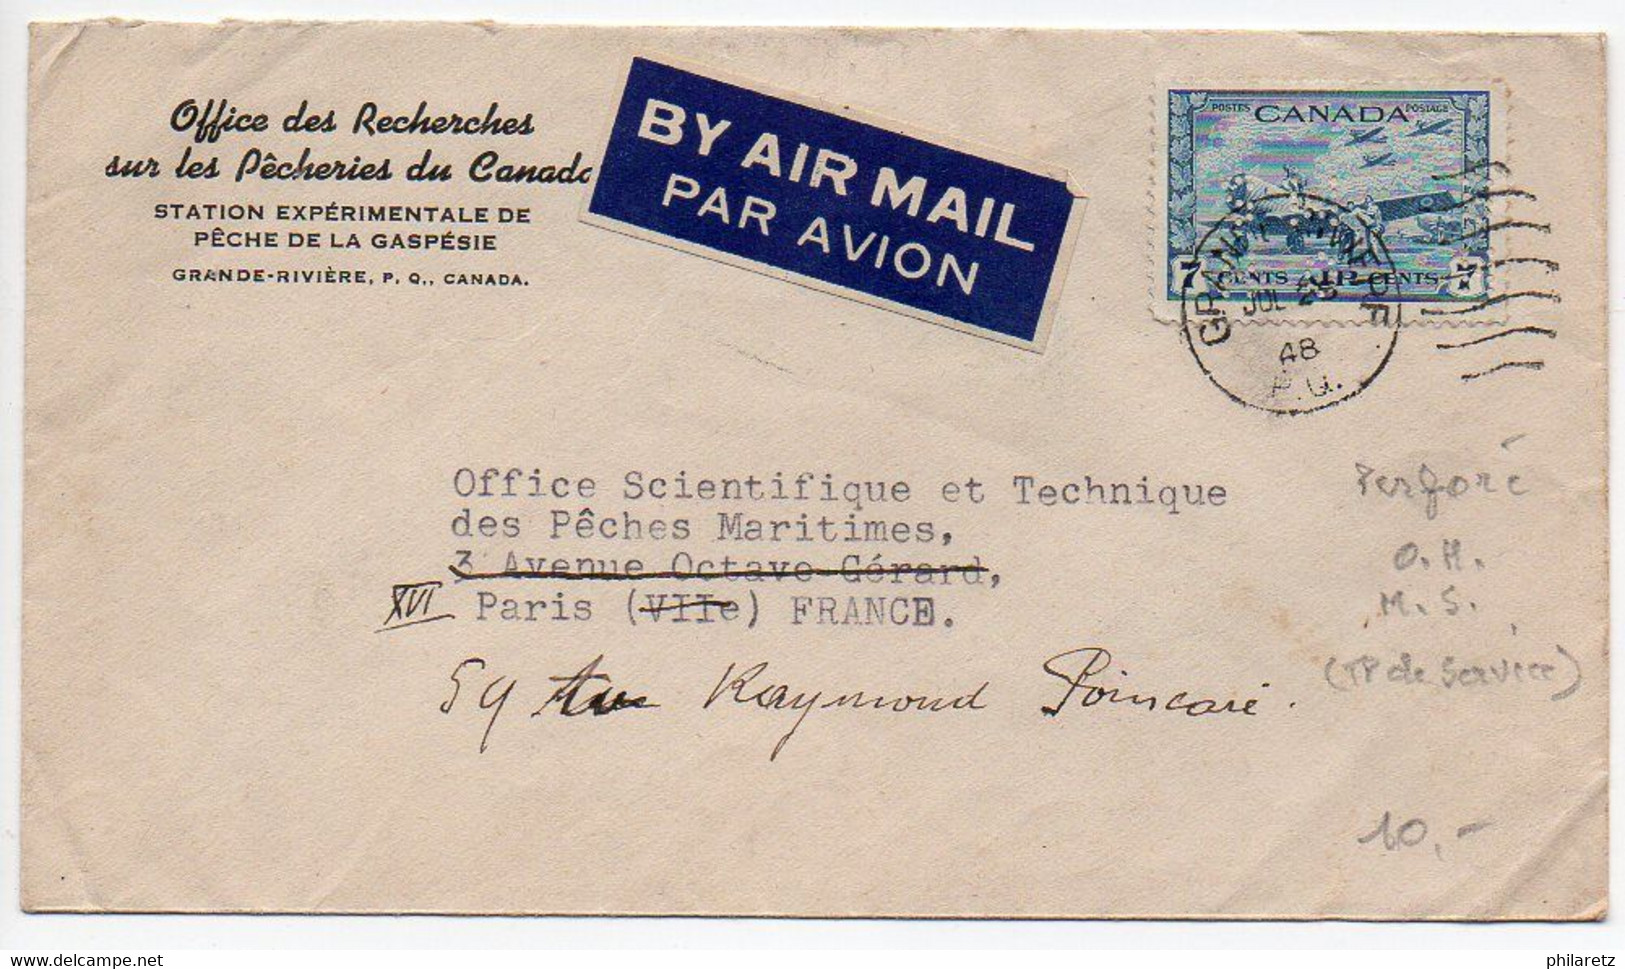 Canada : Timbre Avion Perforé OHMS Sur Lettre De 1948 Pour La France - Perfins